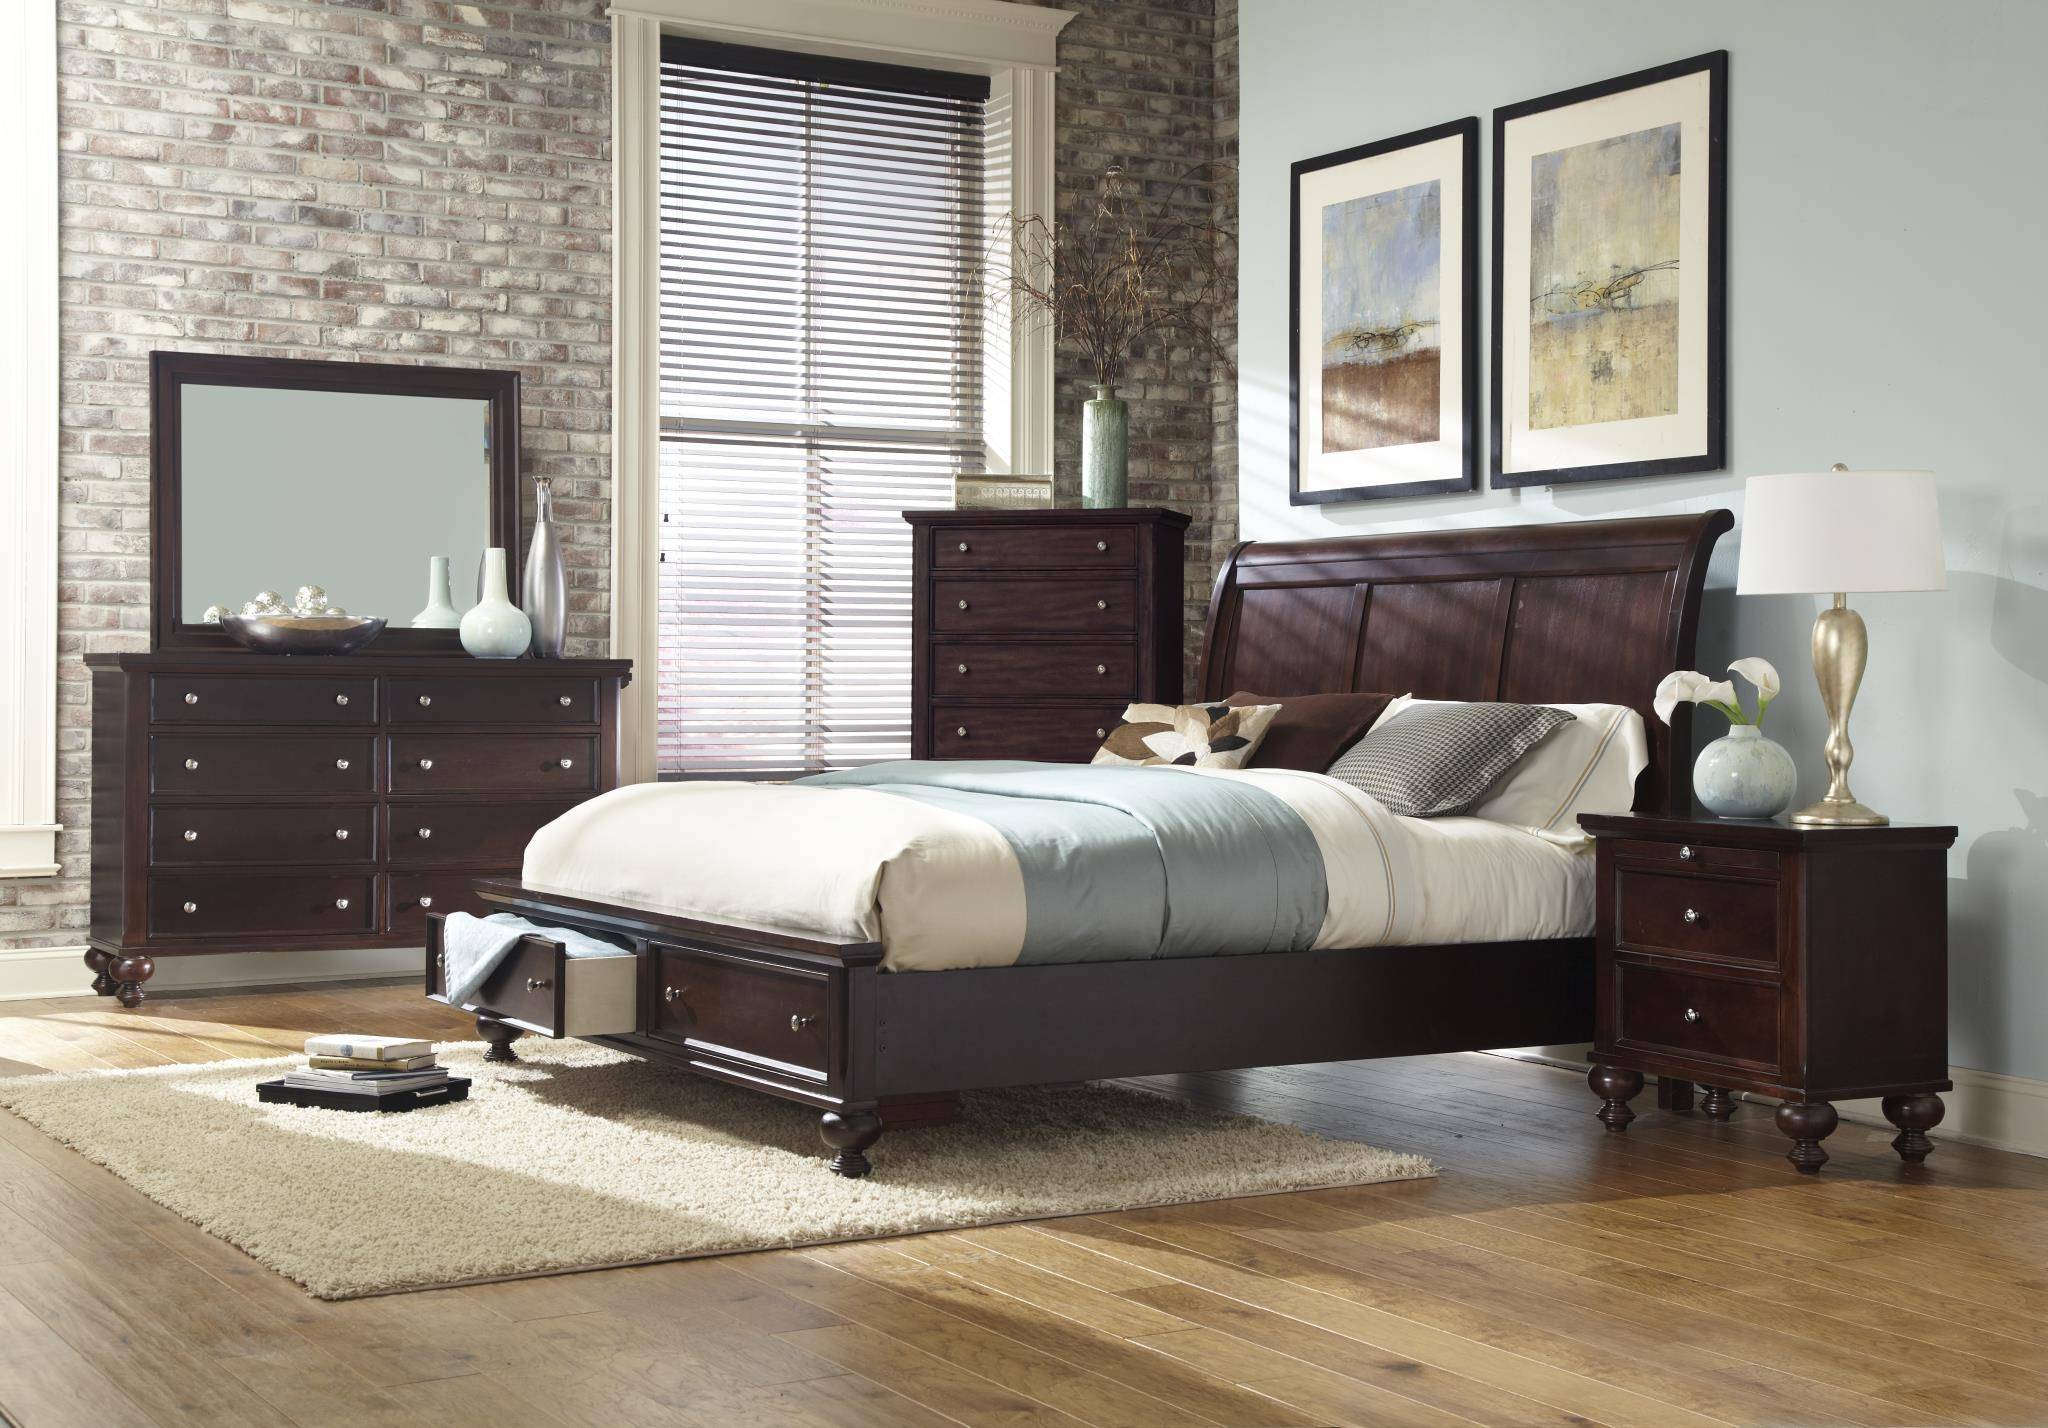 queen bedroom furniture set with storage comfortable